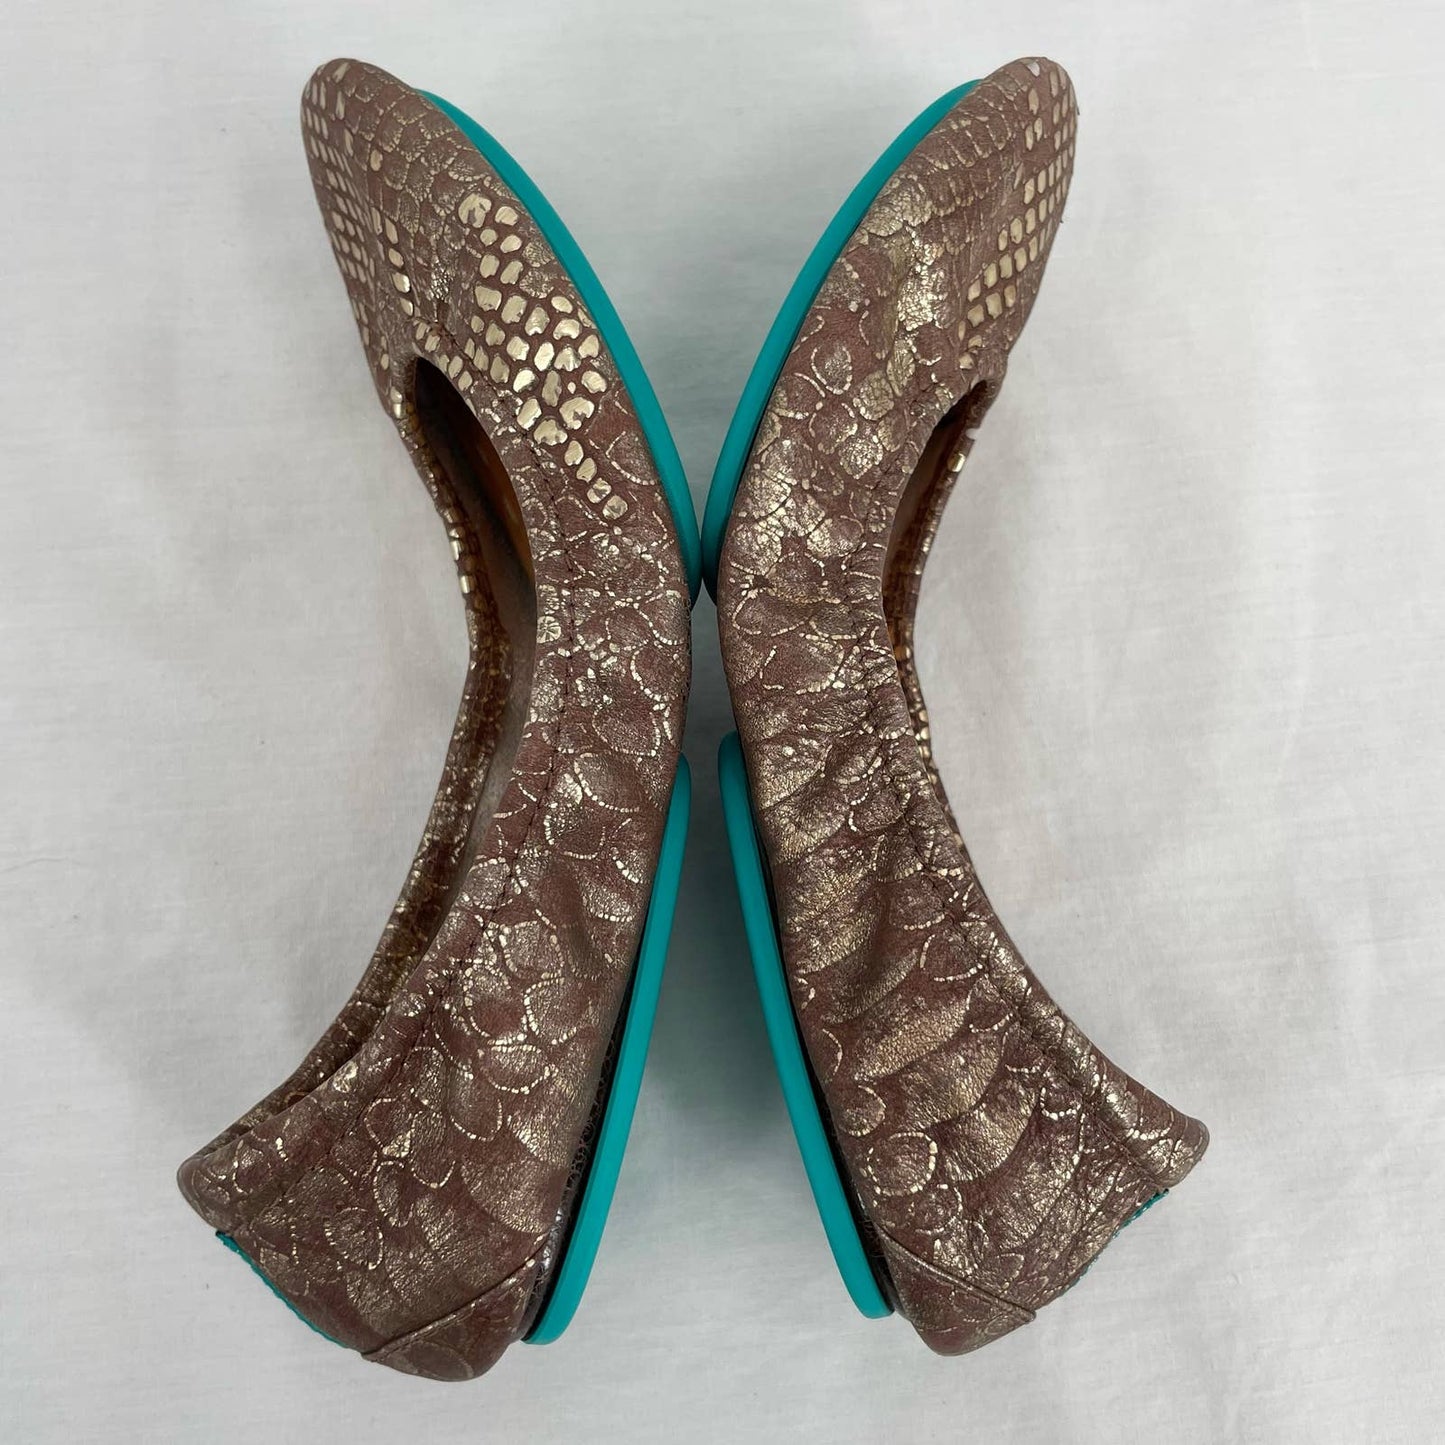 Tieks Wild Copper Leather Ballet Flats Gold Snakeskin Python Shiny Metallic Foil Size 6